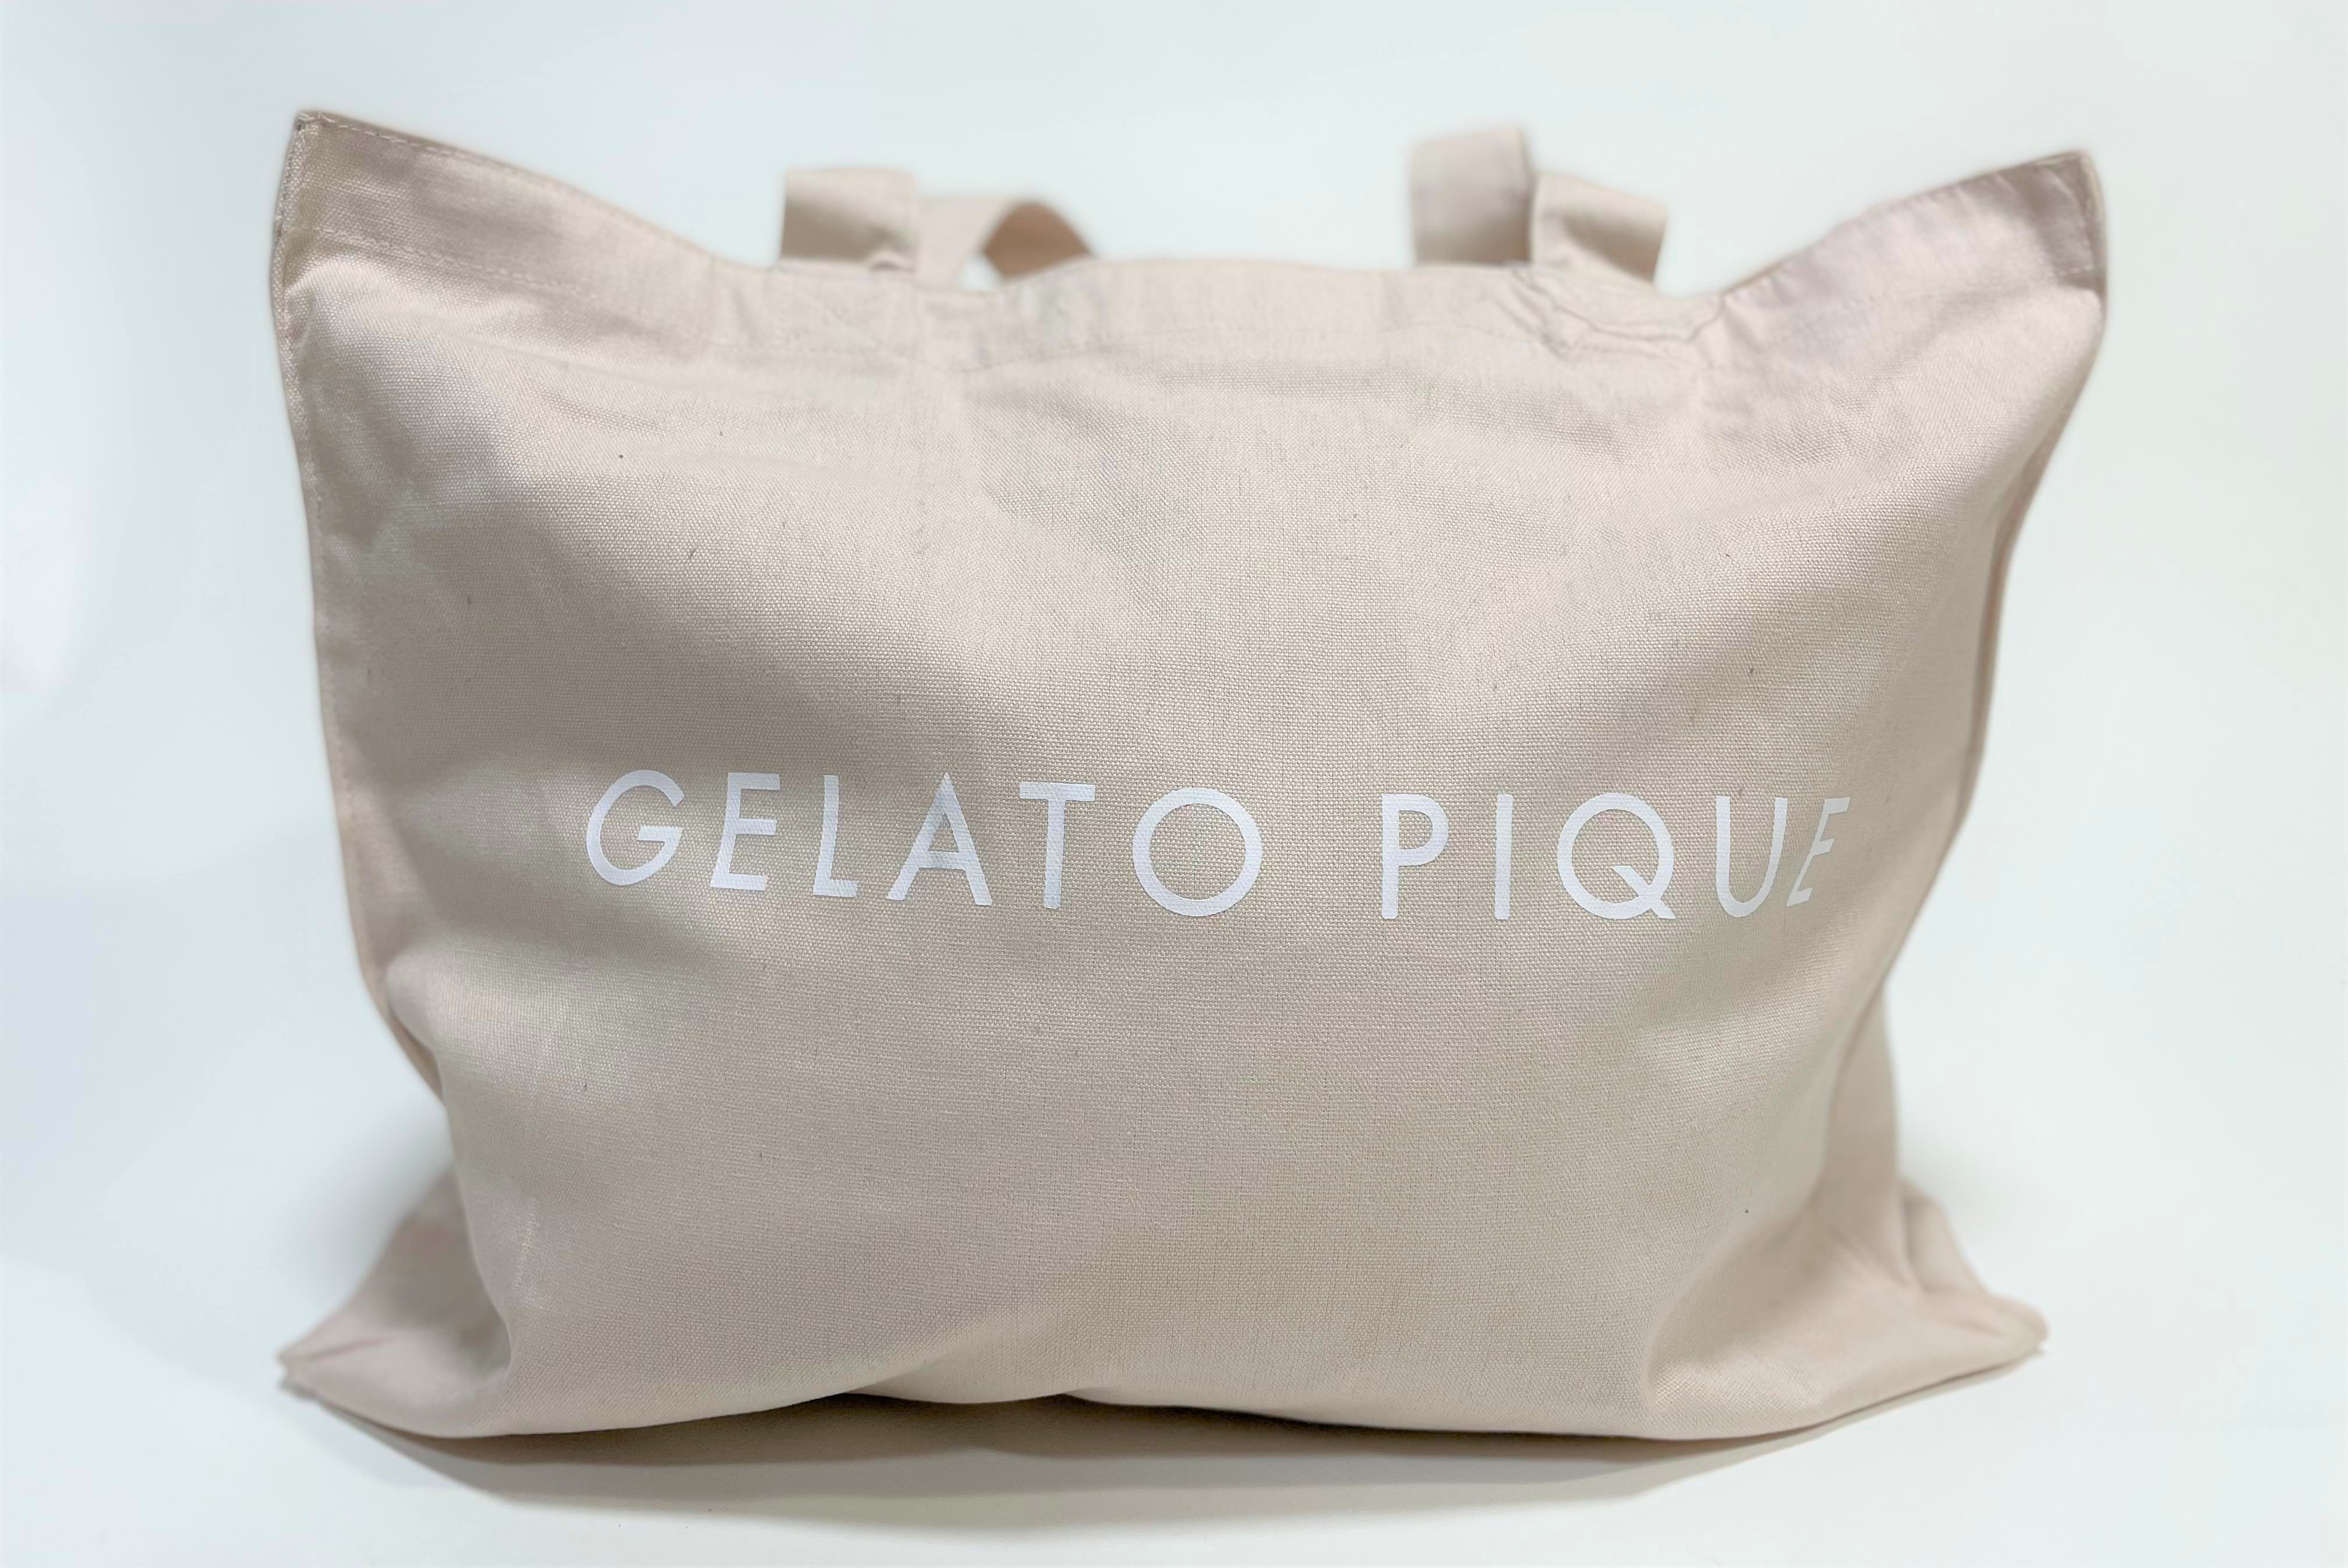 【2022年福袋】『gelato pique ジェラートピケ』の袋に変化!! 布面積が増えてよりポカポカになったぞ | ロケットニュース24